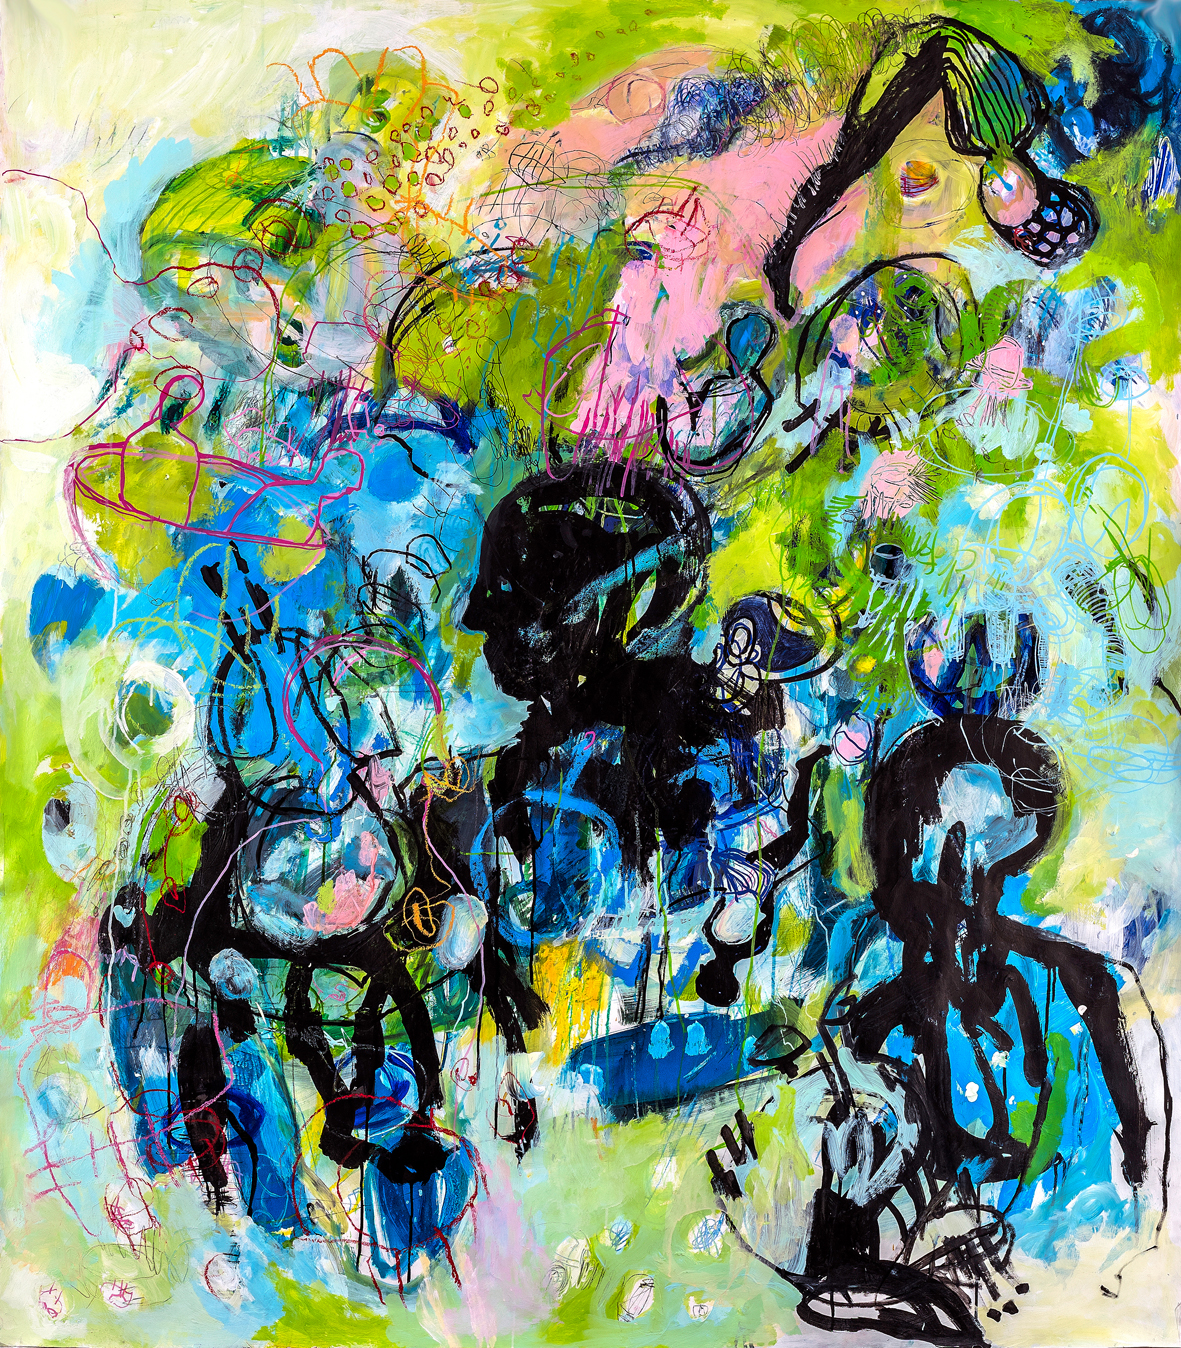 Gemälde von Daniela Kammerer in kräftigen blau-grün-Tönen